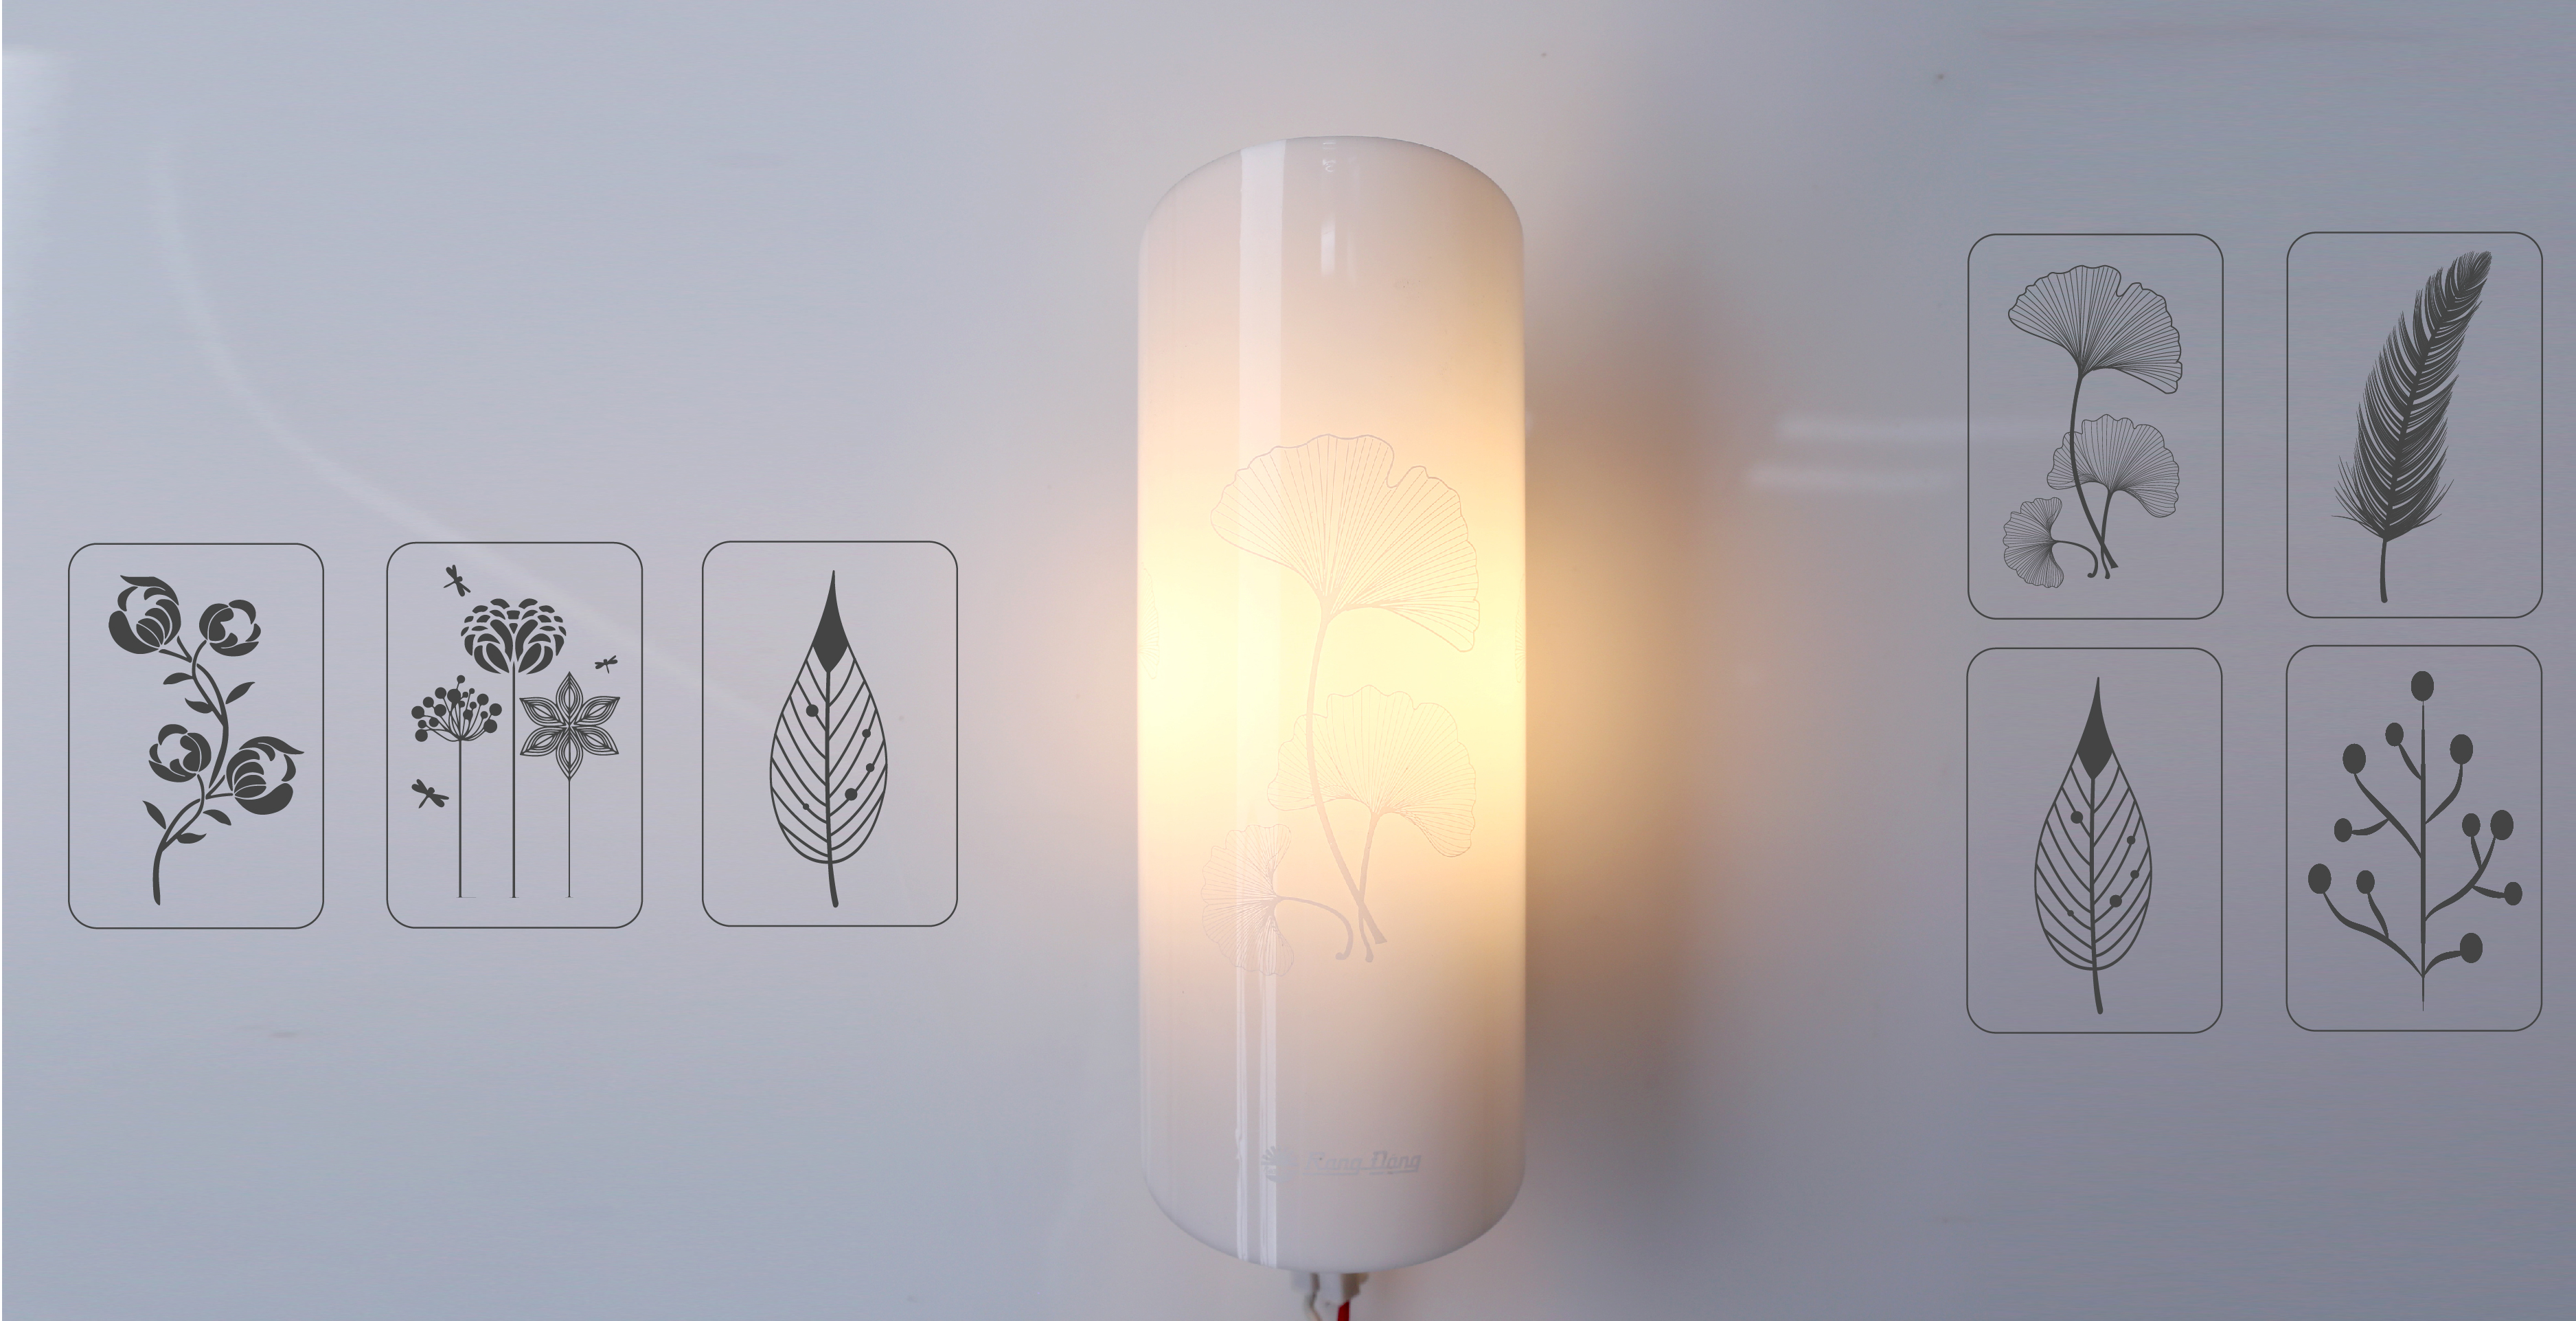 đèn gắn tường sử dụng bóng led dây tóc